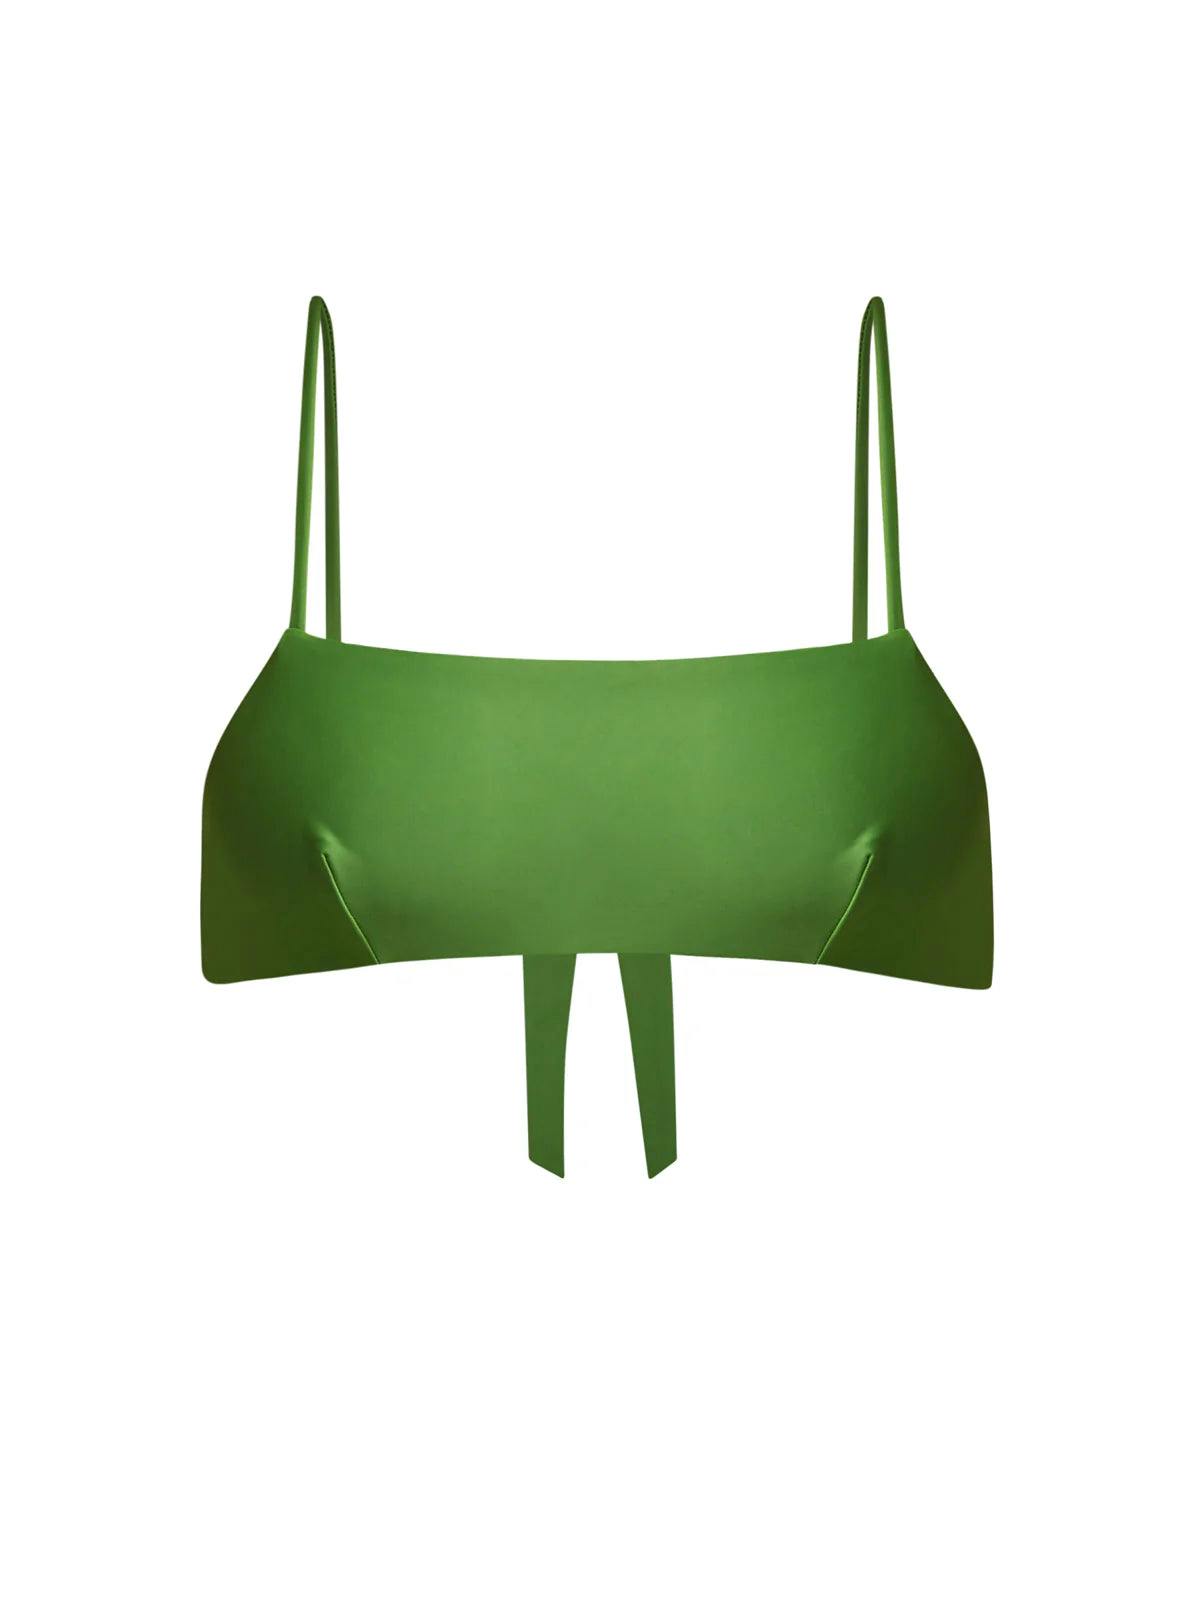 Ana green bikini top